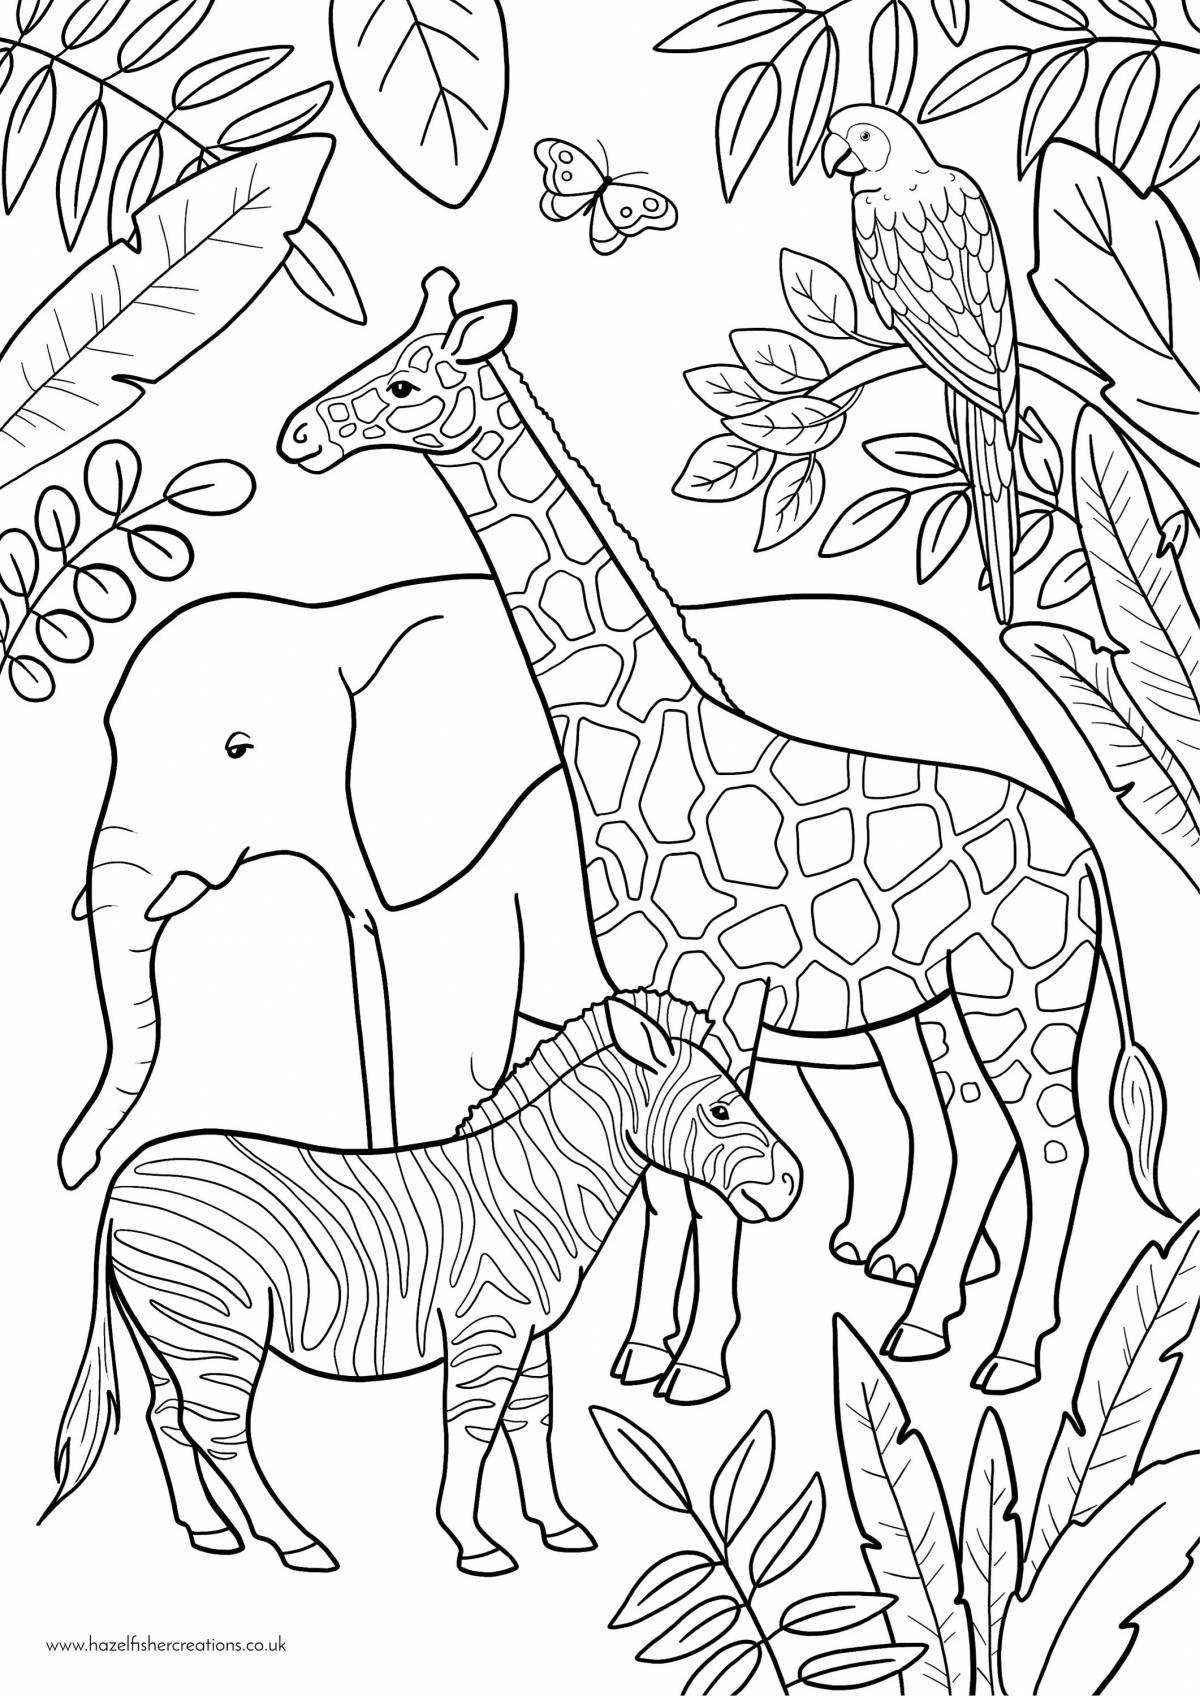 Реалистичная страница раскраски африканских животных для детей 4-5 лет